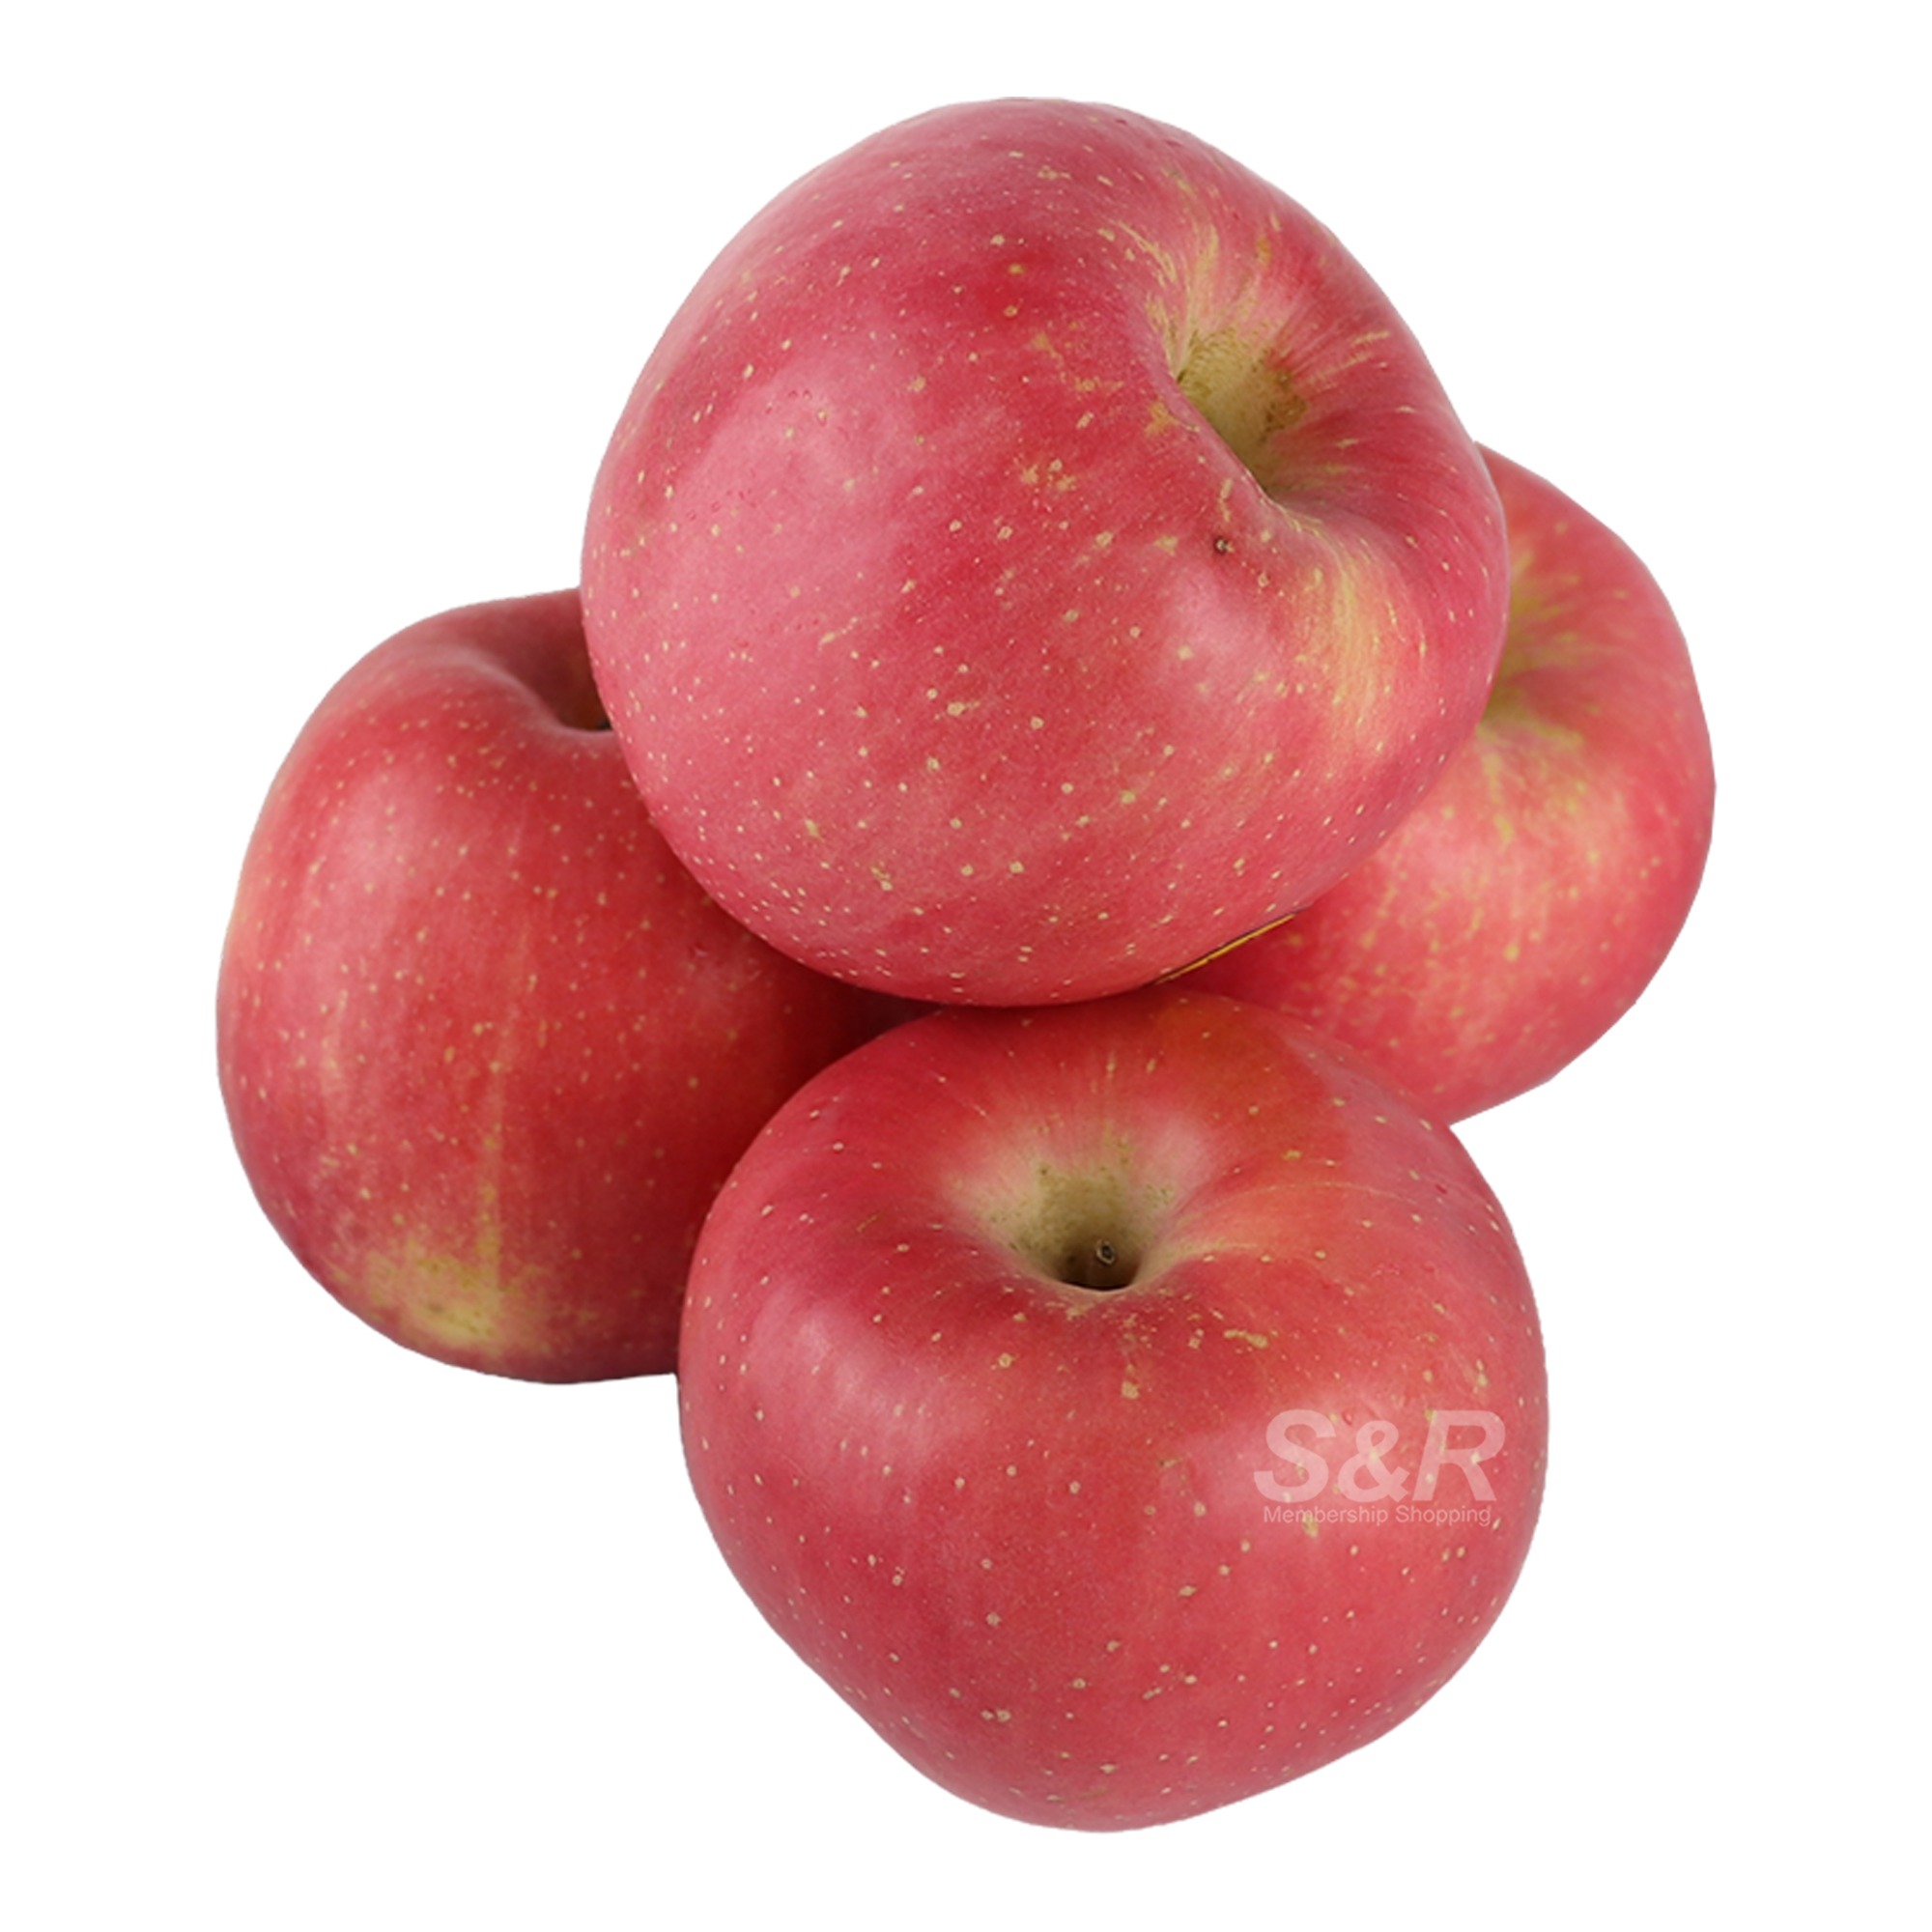 S&R Premium Fuji Apple 4pcs